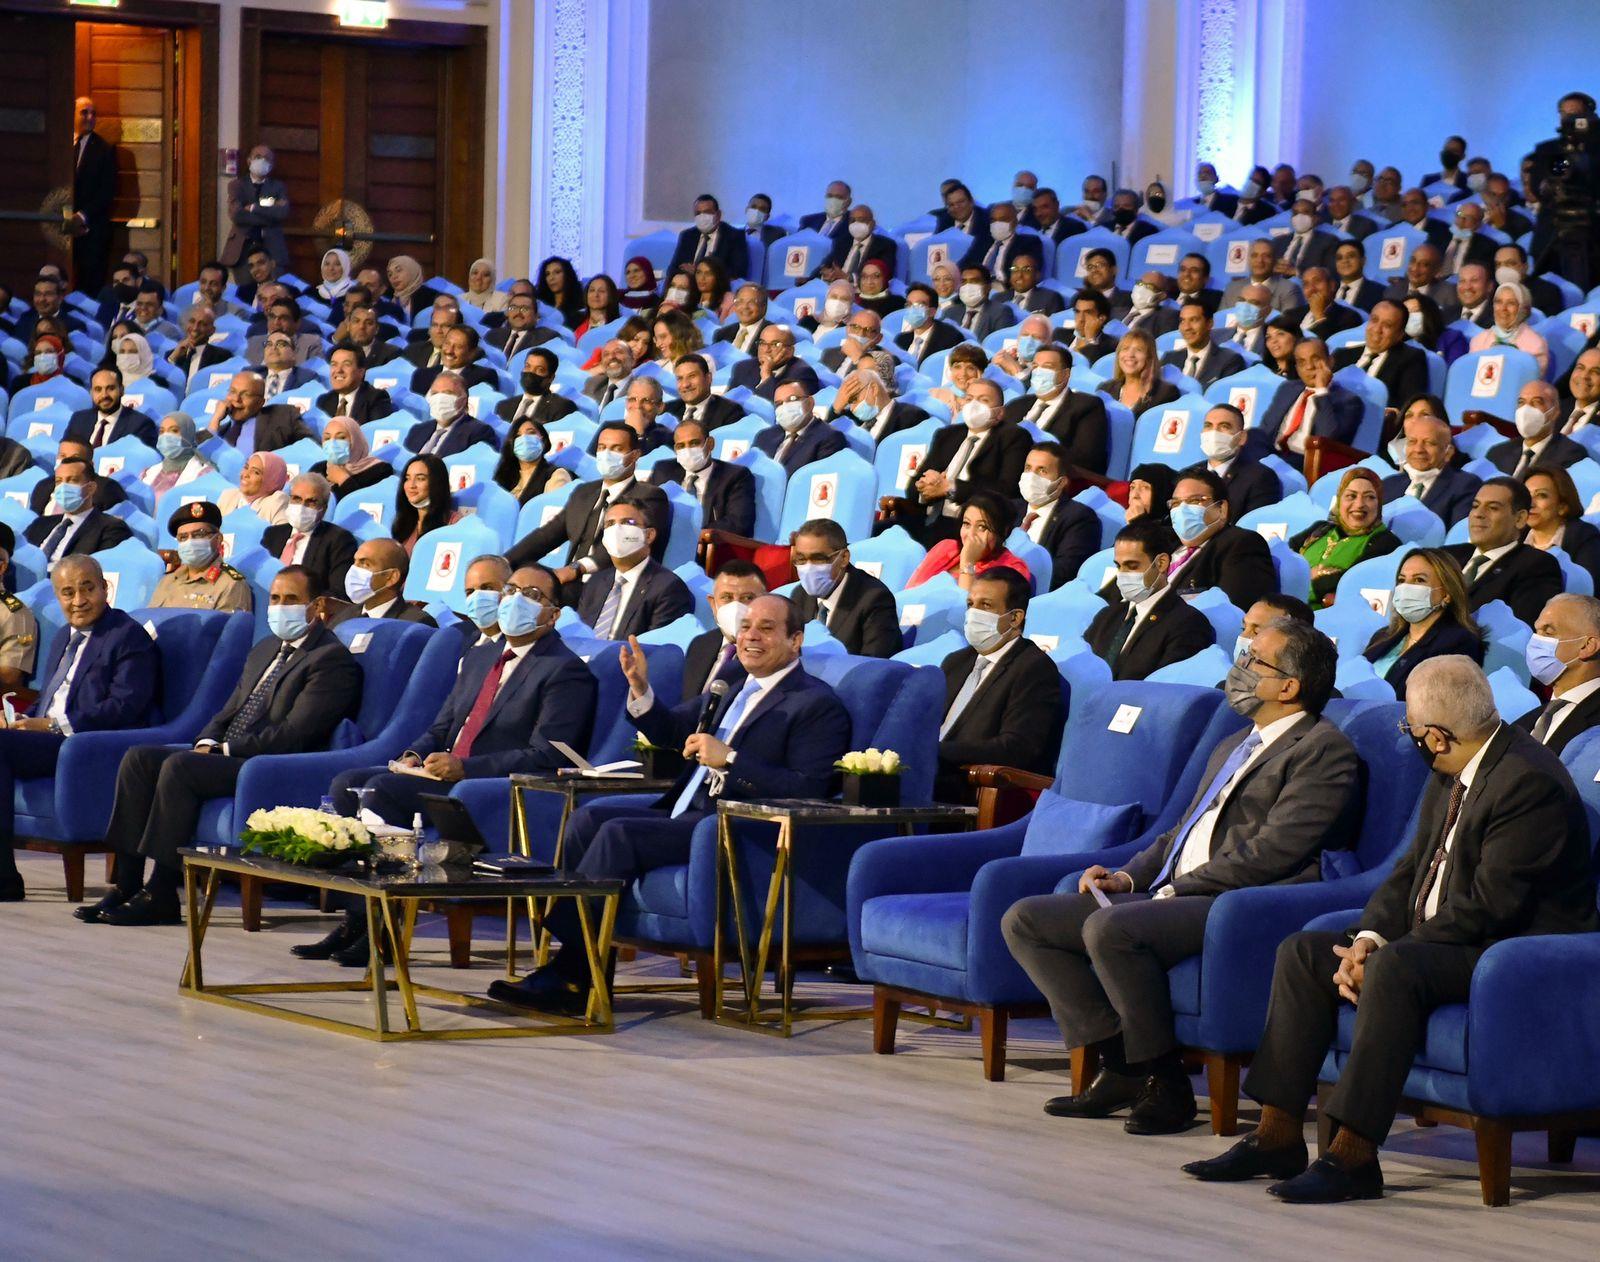 المتحدث الرسمي ينشر صوراً لافتتاح الرئيس عدد من المشروعات وإطلاق منصة مصر الرقمية